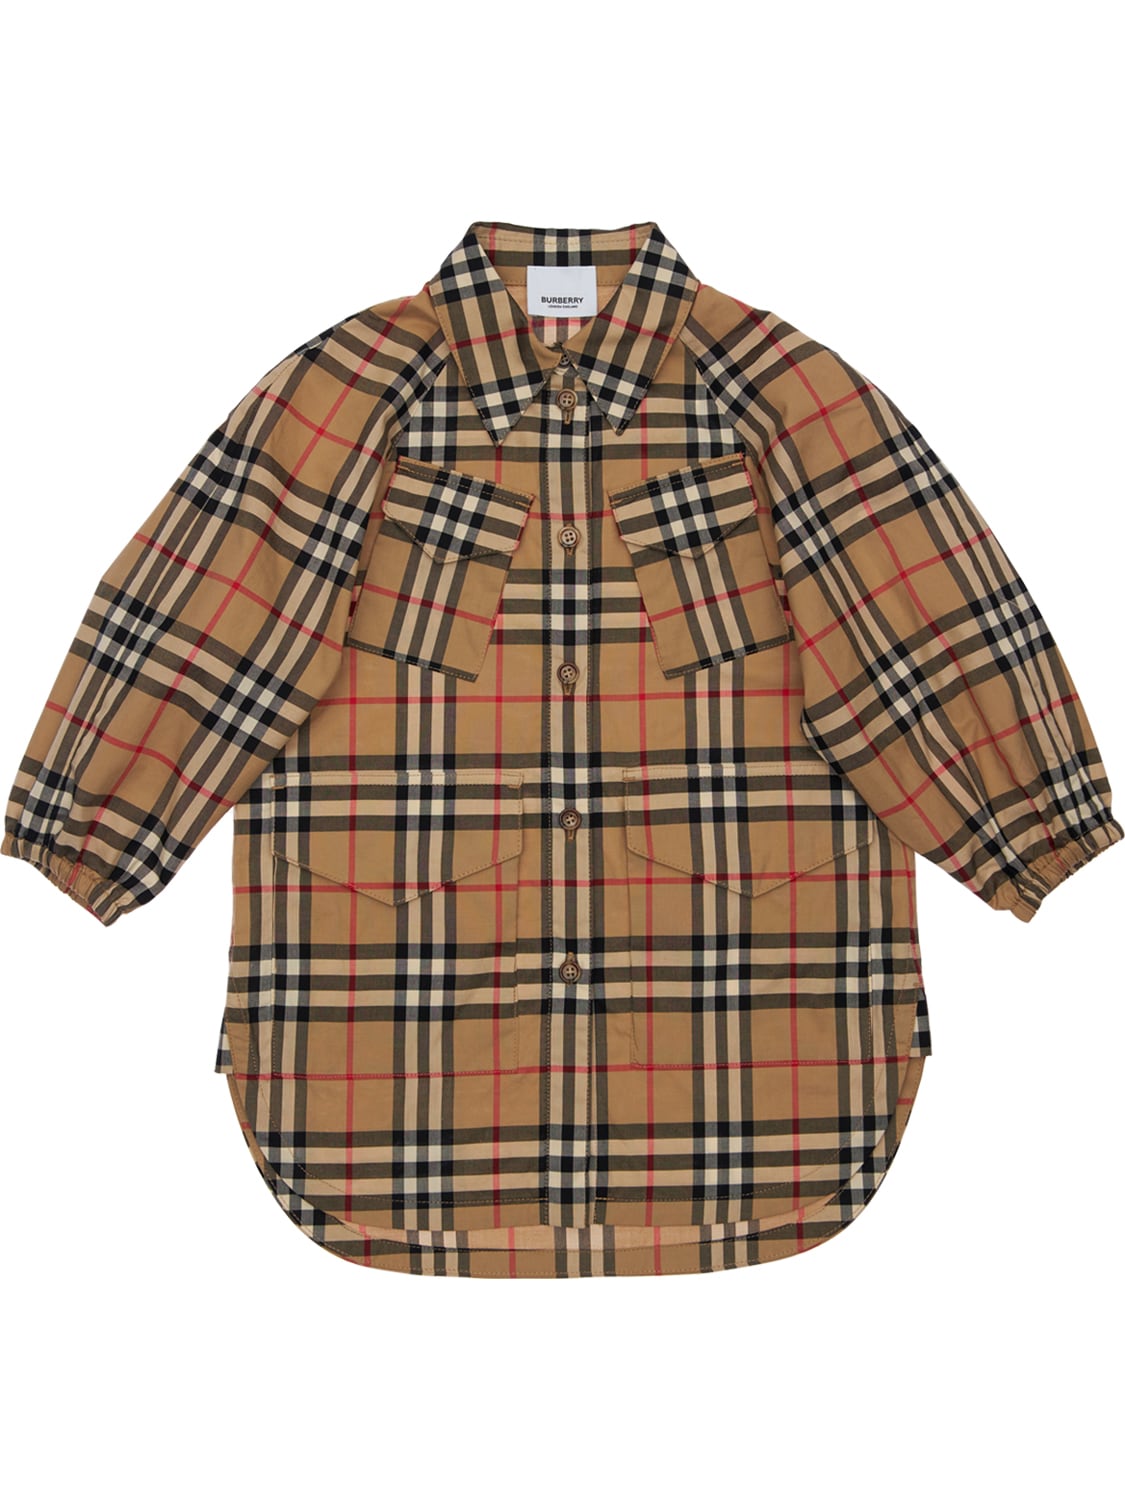 BURBERRY CHECK COTTON SHIRT DRESS,73I91L013-QTCWMJG1